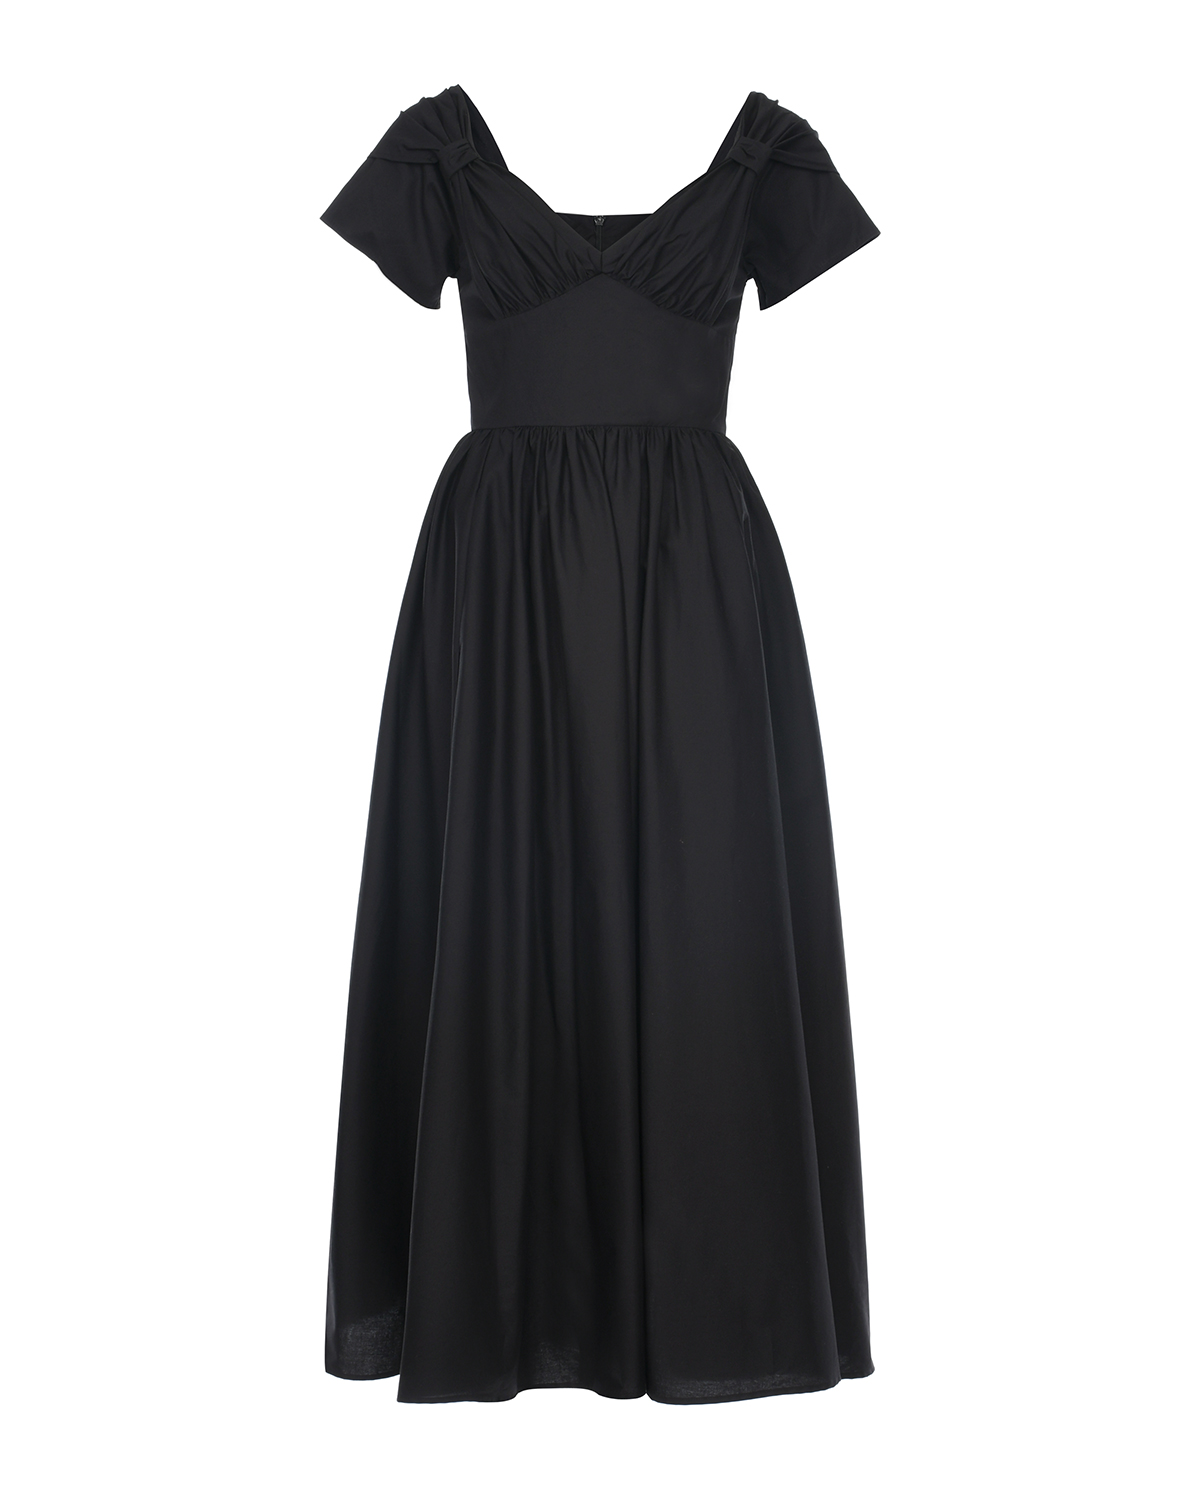 Черное платье с бантами на плечах Vivetta, размер 42, цвет черный - фото 1